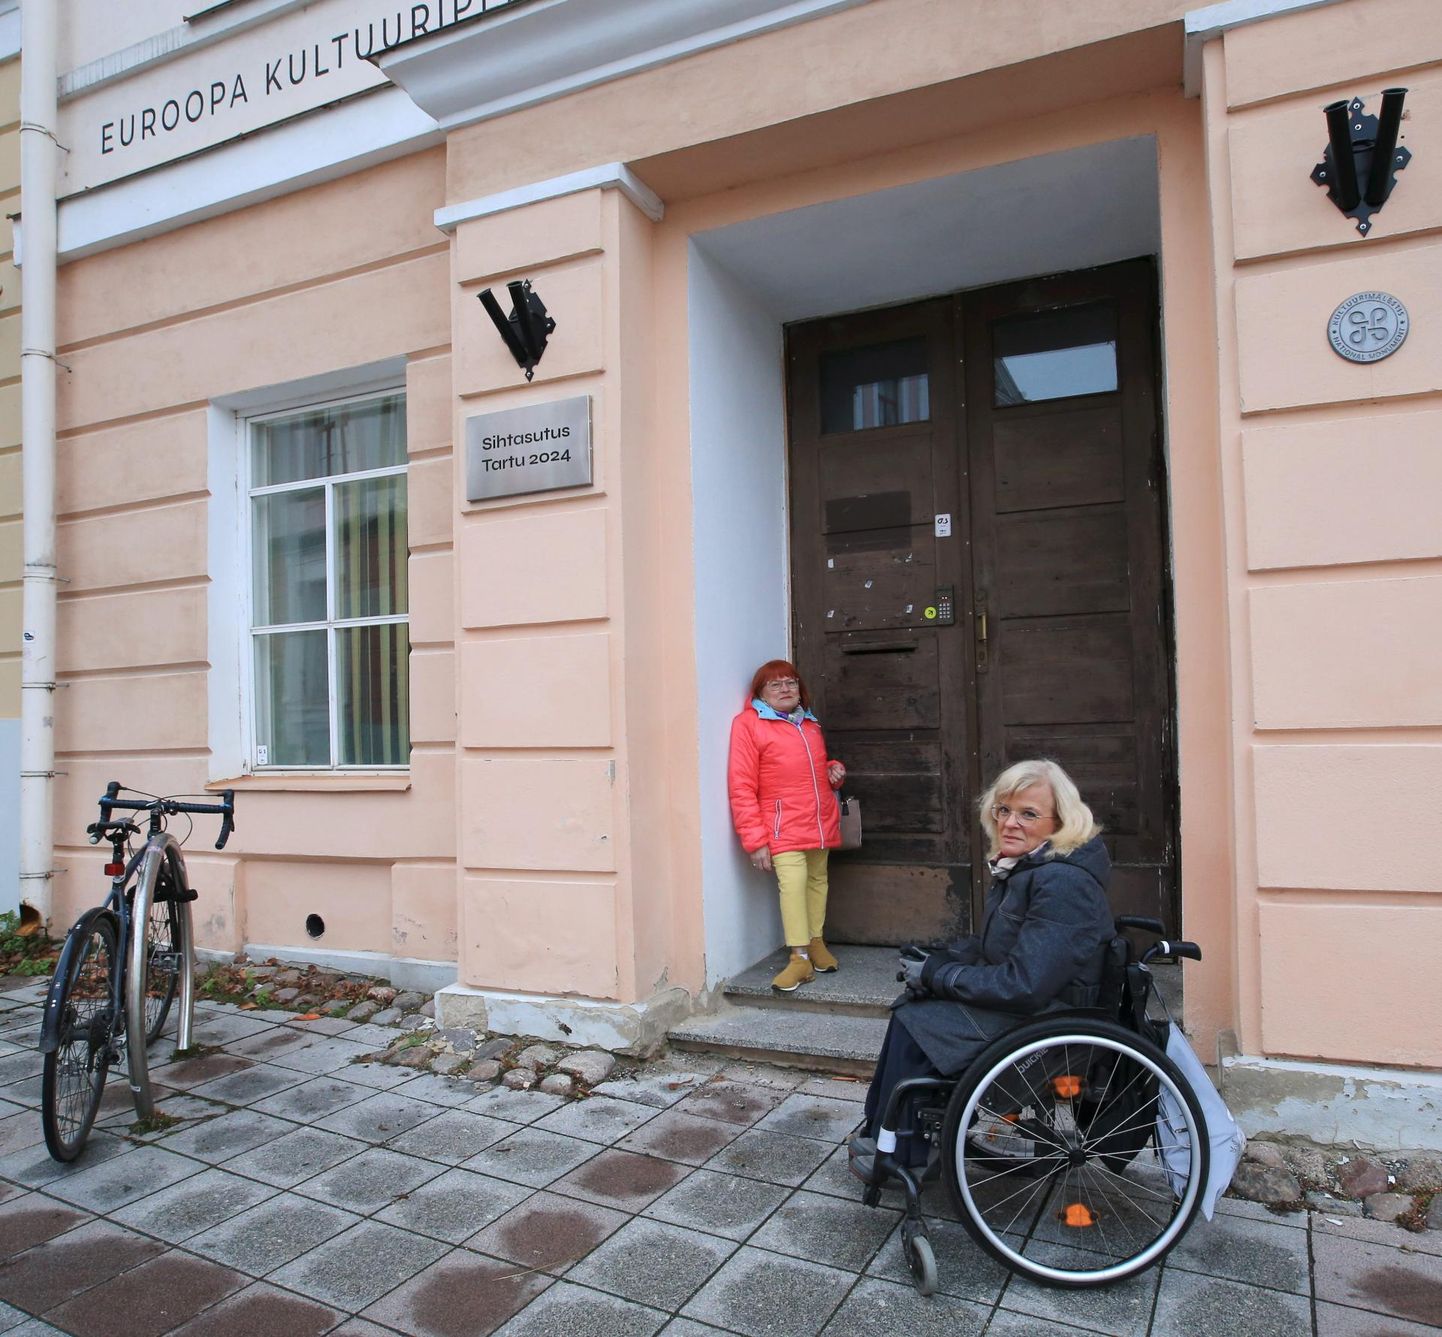 MTÜ Händikäpp juhatuse liikmed Ülle Valvar (vasakul) ja Ave Jaakson tõstatasid Euroopa kultuuripealinn Tartu 2024 kontori ligipääsetavuse küsimuse. Aga muutusi pole, Ave Jaakson ei pääse seal ise uksestki sisse.